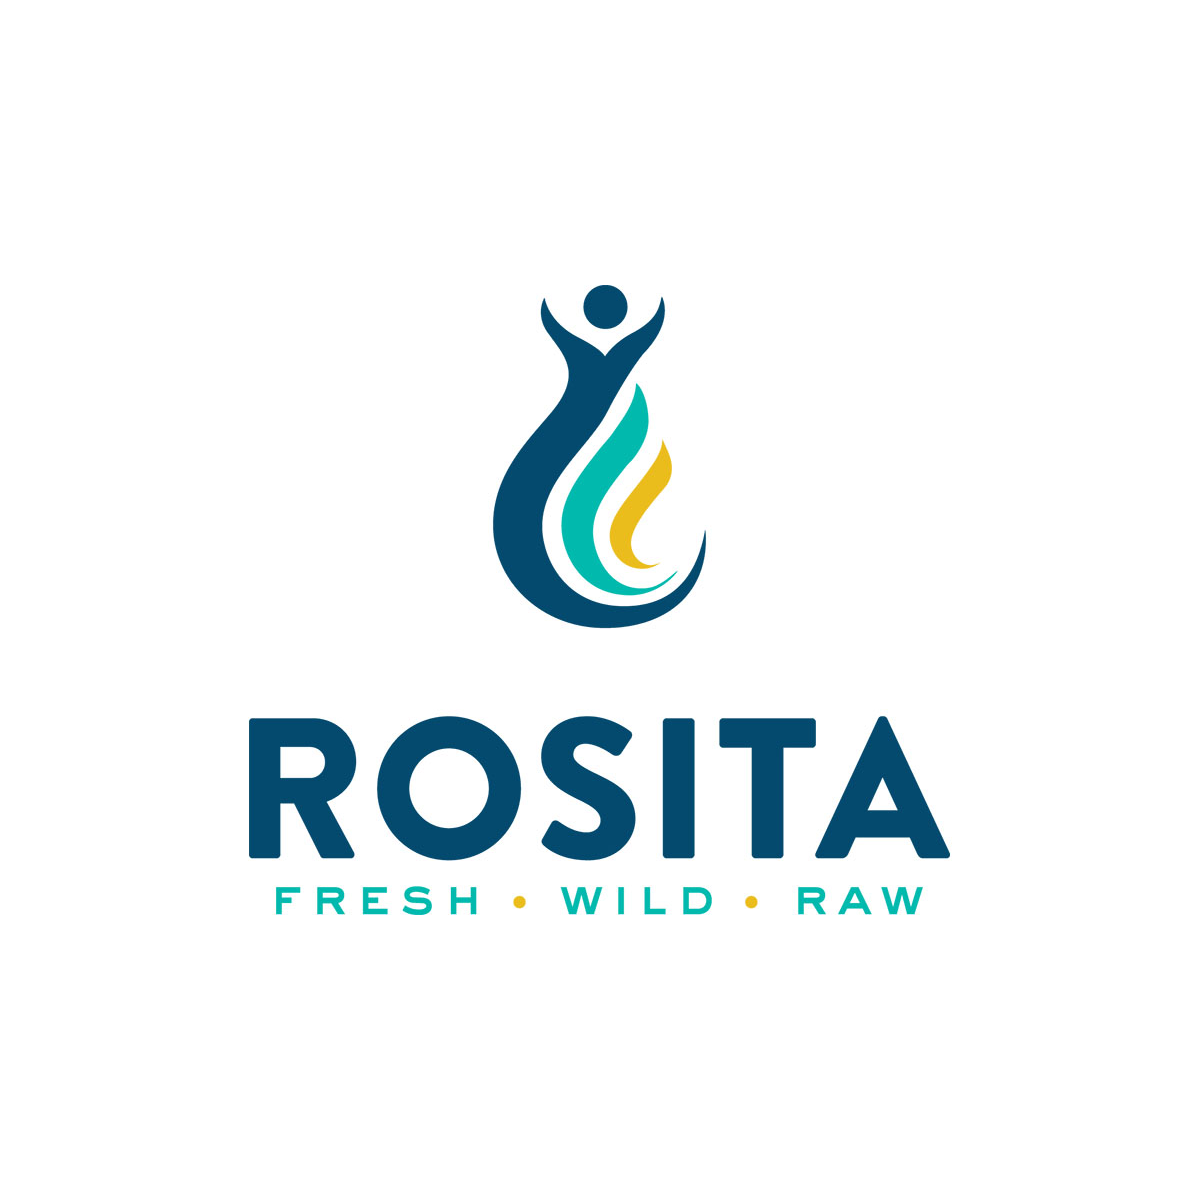 www.rositausa.com